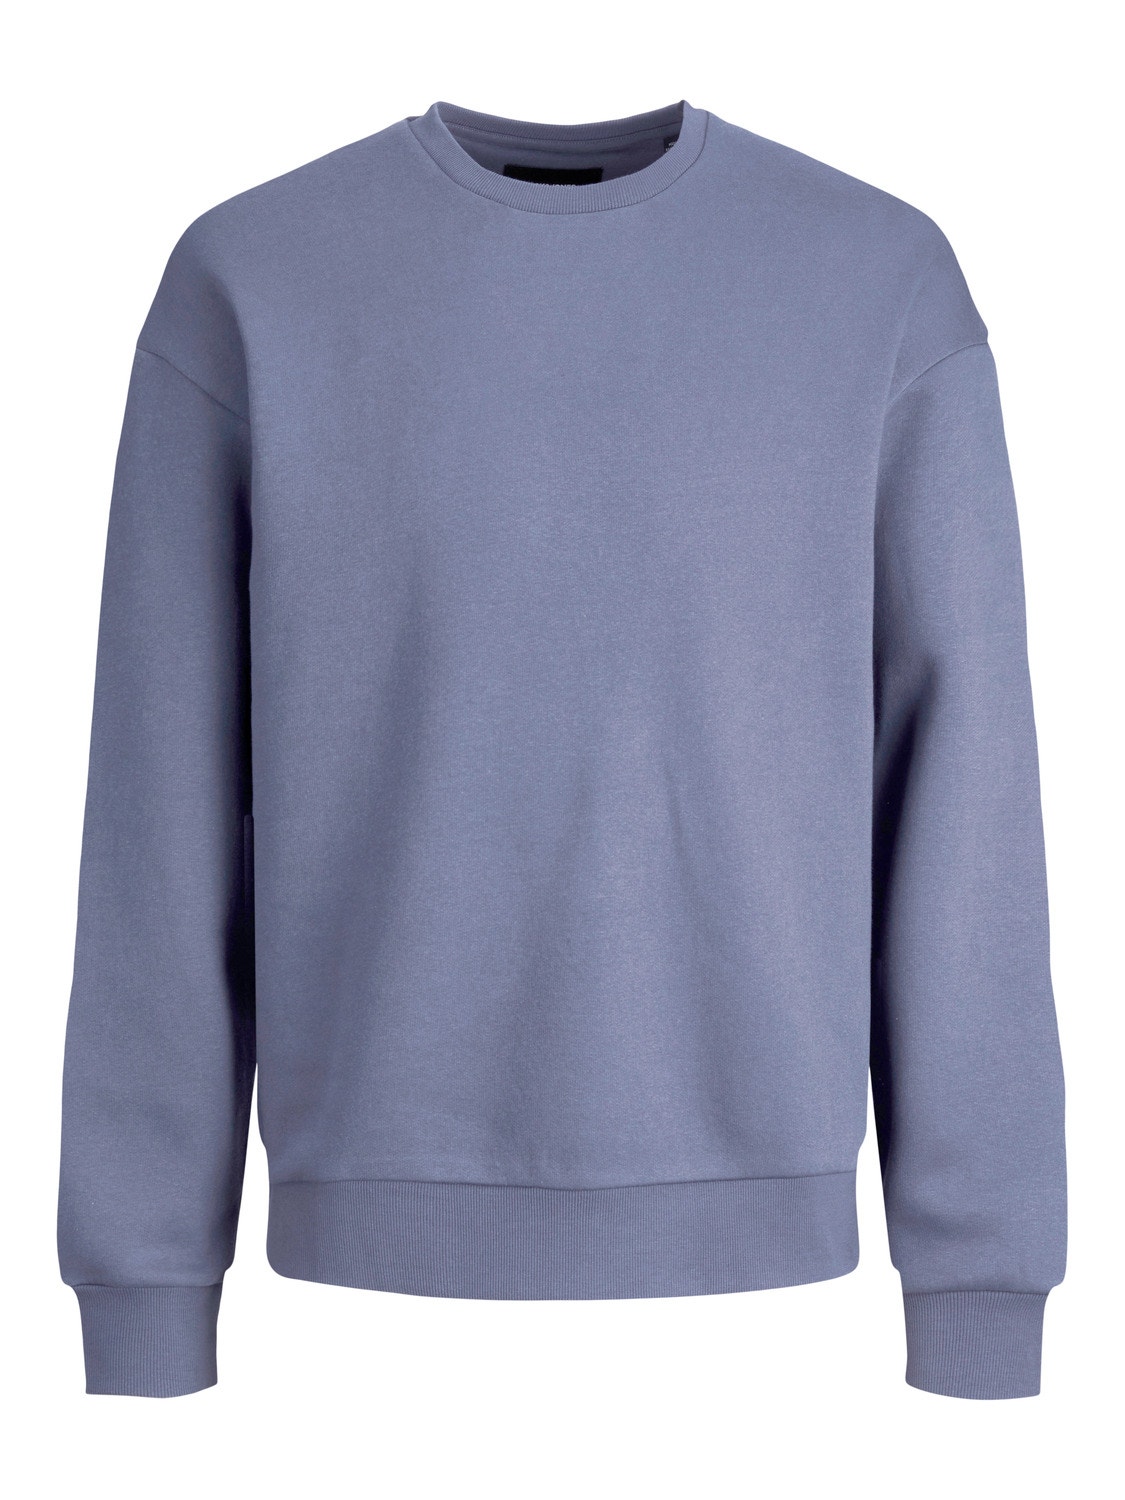 Jack & Jones Plain Crew neck Sweatshirt -Grasaille - 12208182